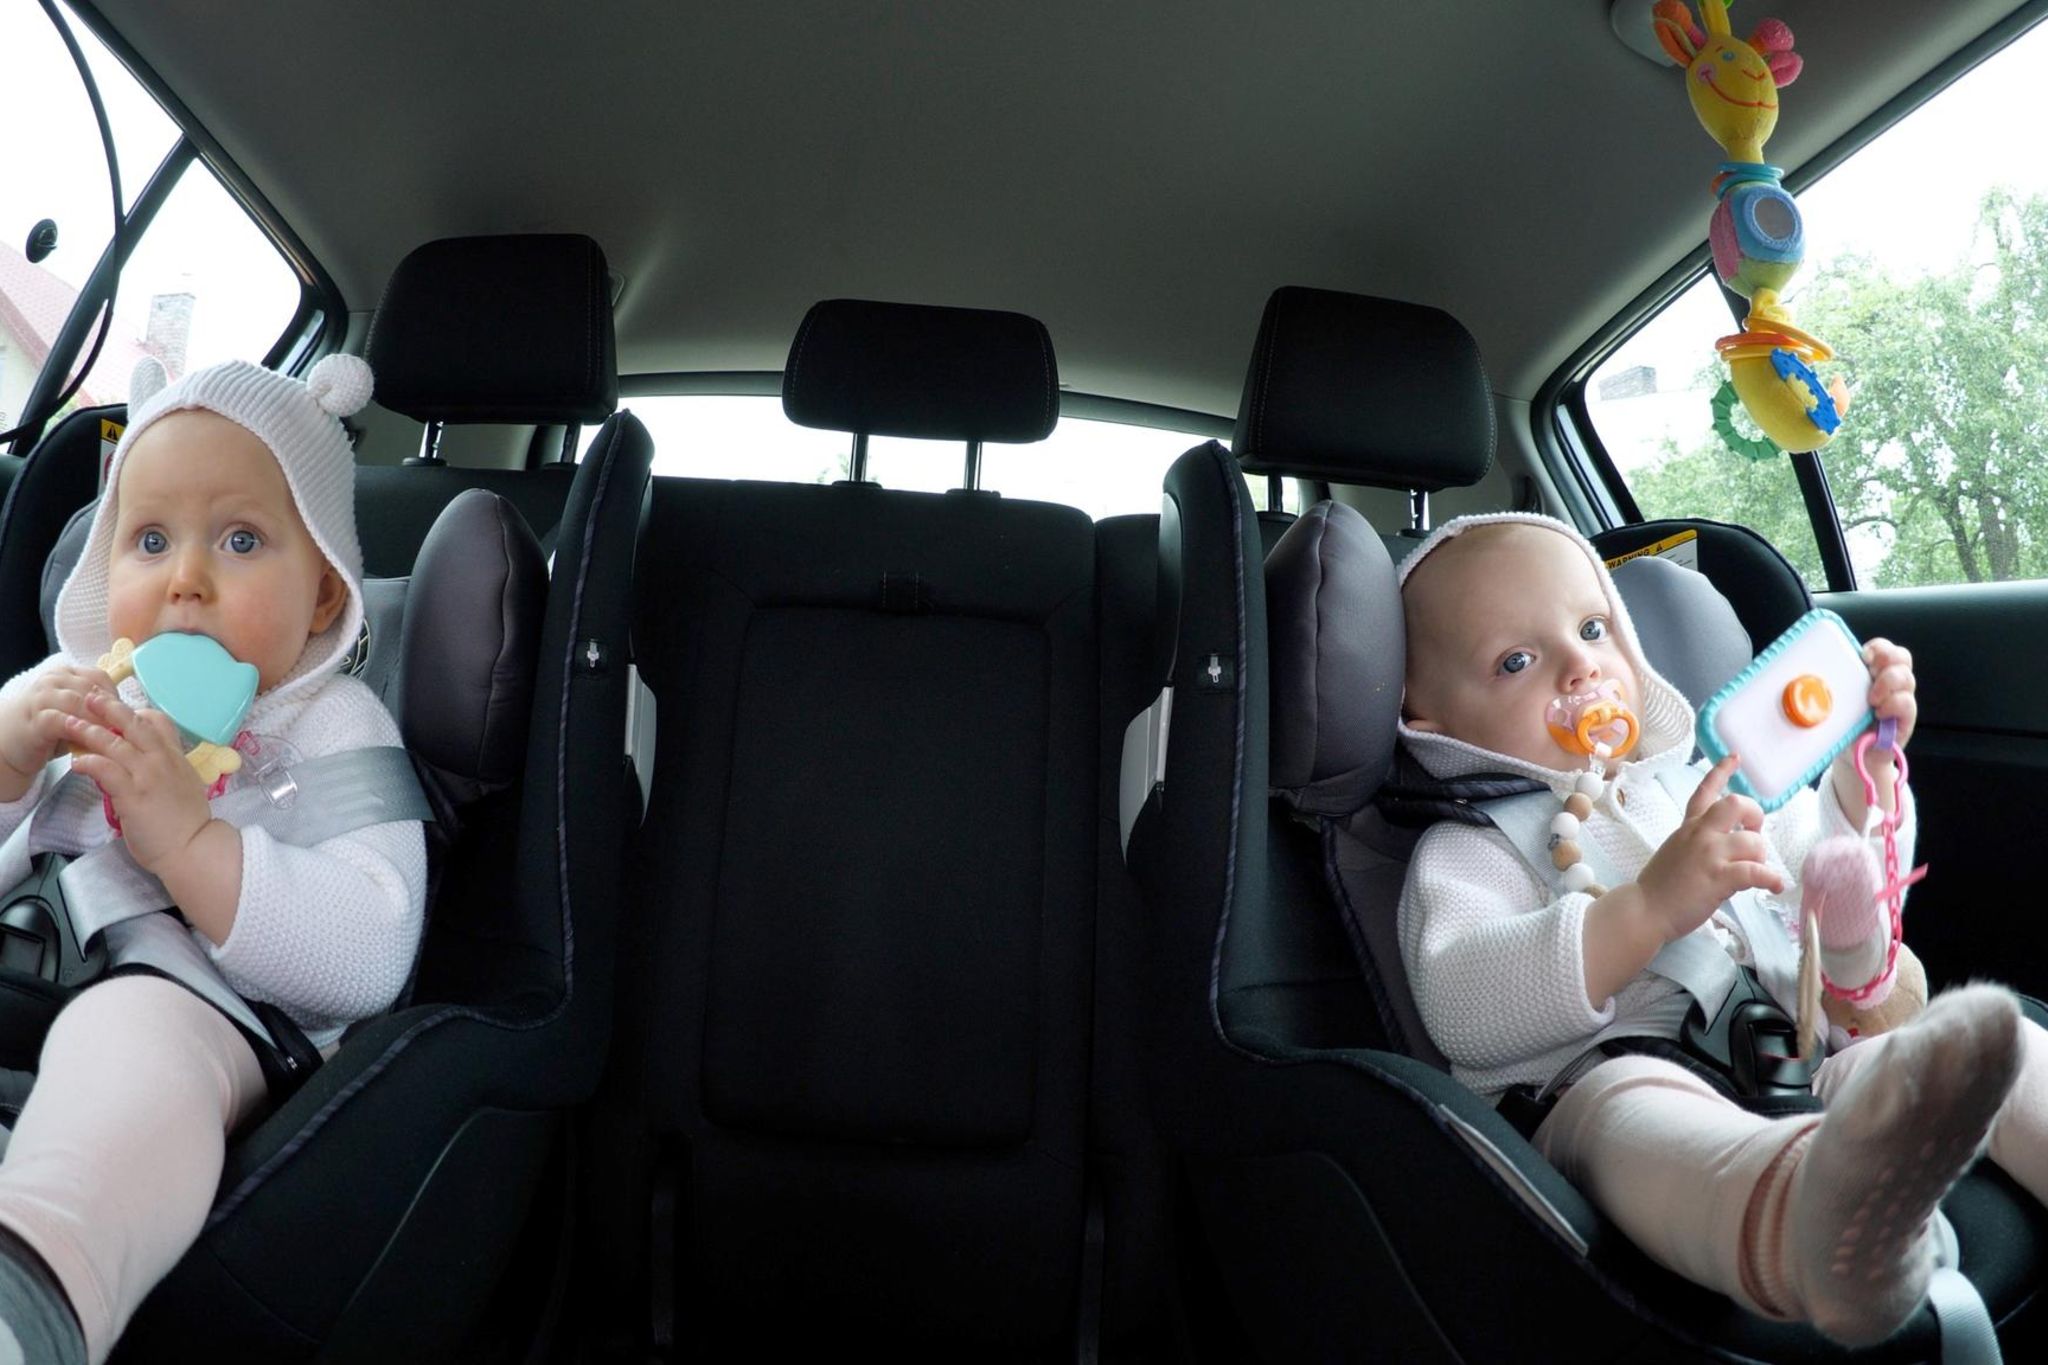 Tipps für entspannteres Autofahren mit Baby: Spielen lenkt ab